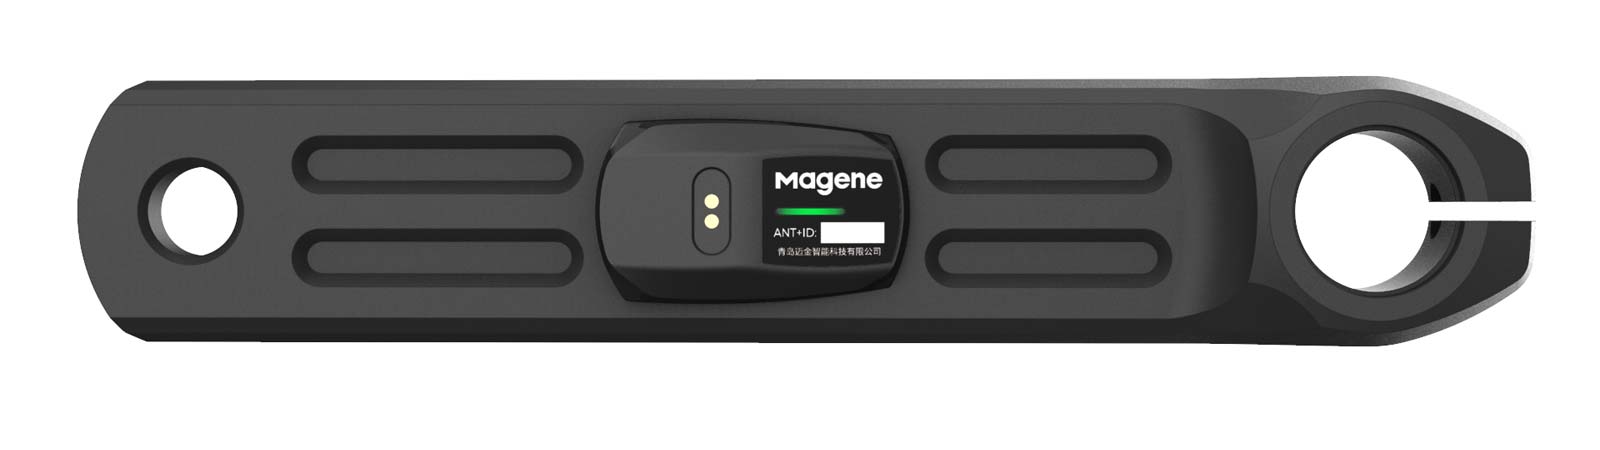 Magene P325 CS low-cost power meter crankset, affordable alloy road bike powermeter cranks, Kickstarter direct from China, sensor detail